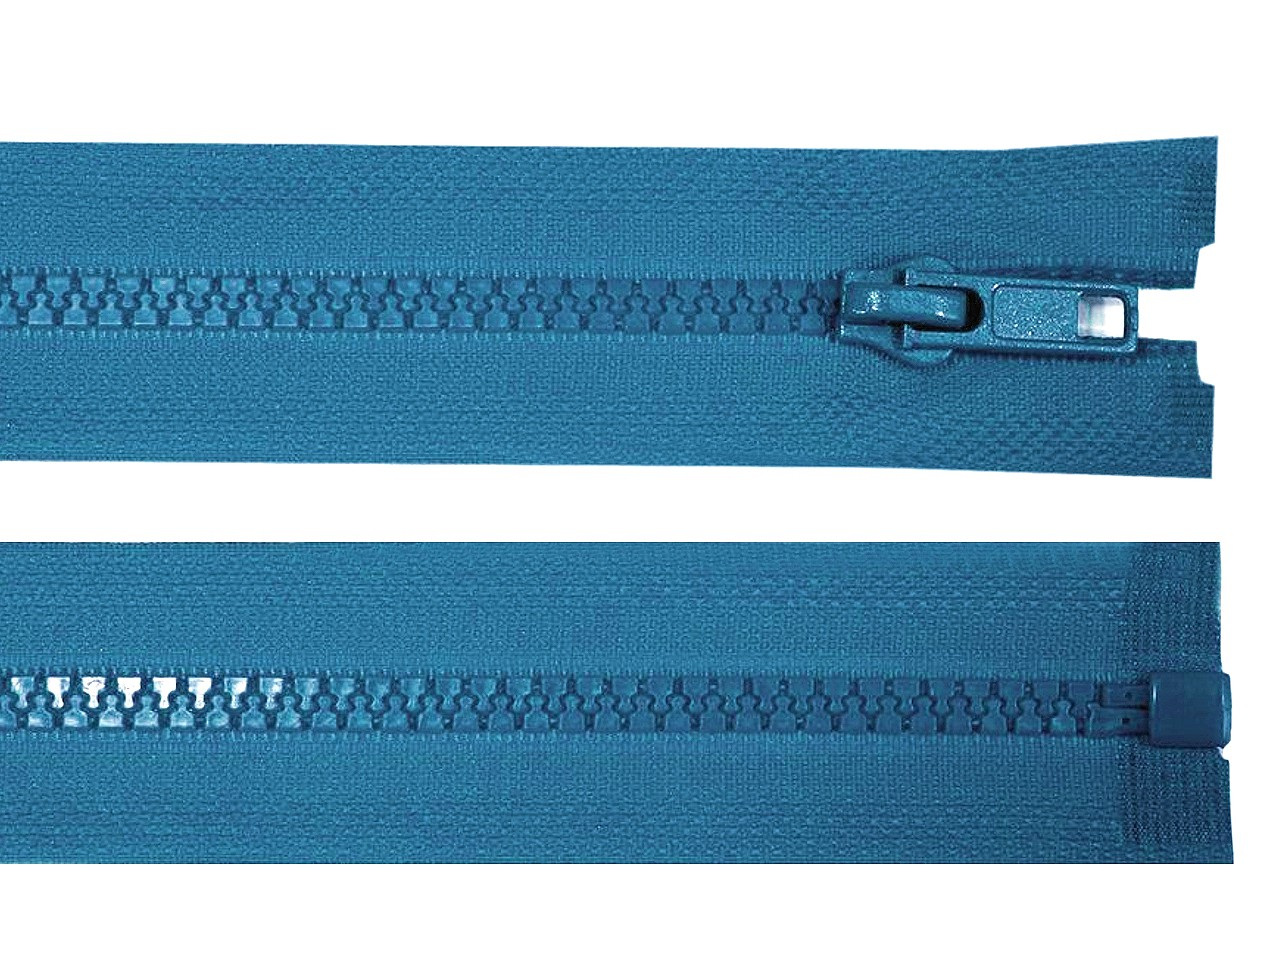 Kostěný zip No 5 délka 40 cm bundový, barva 216 modrá sytá